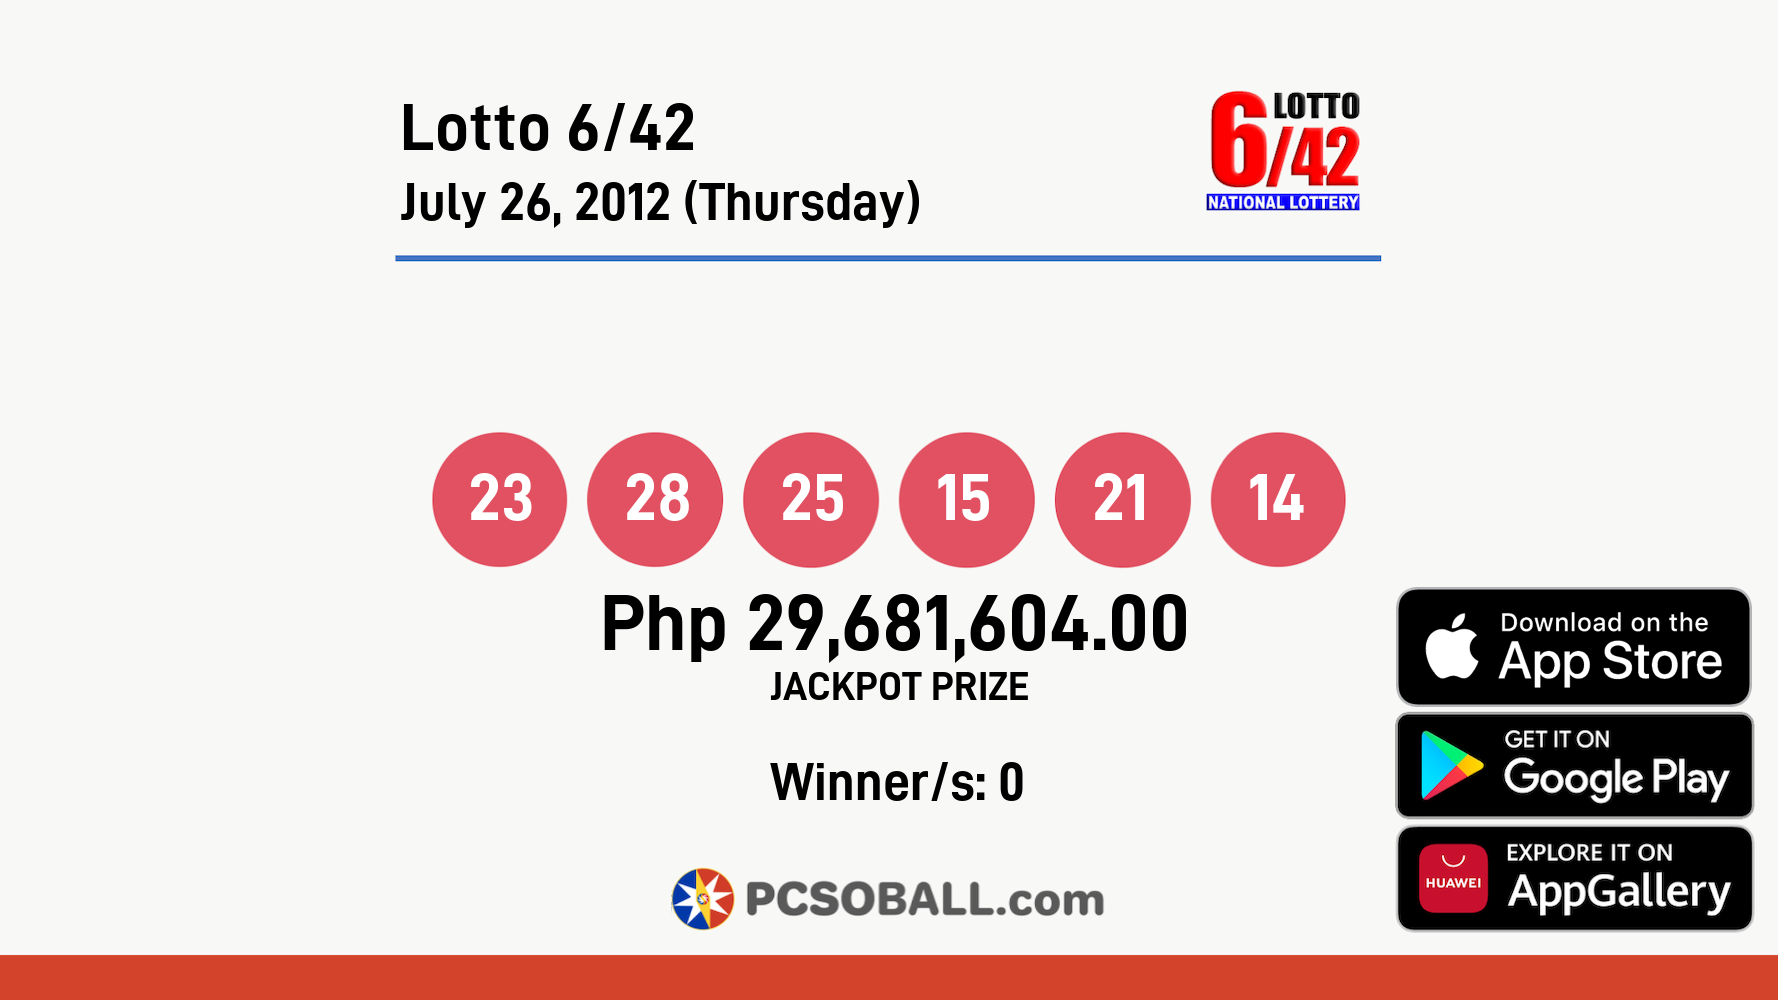 Lotto 6/42 July 26, 2012 (Thursday) Result